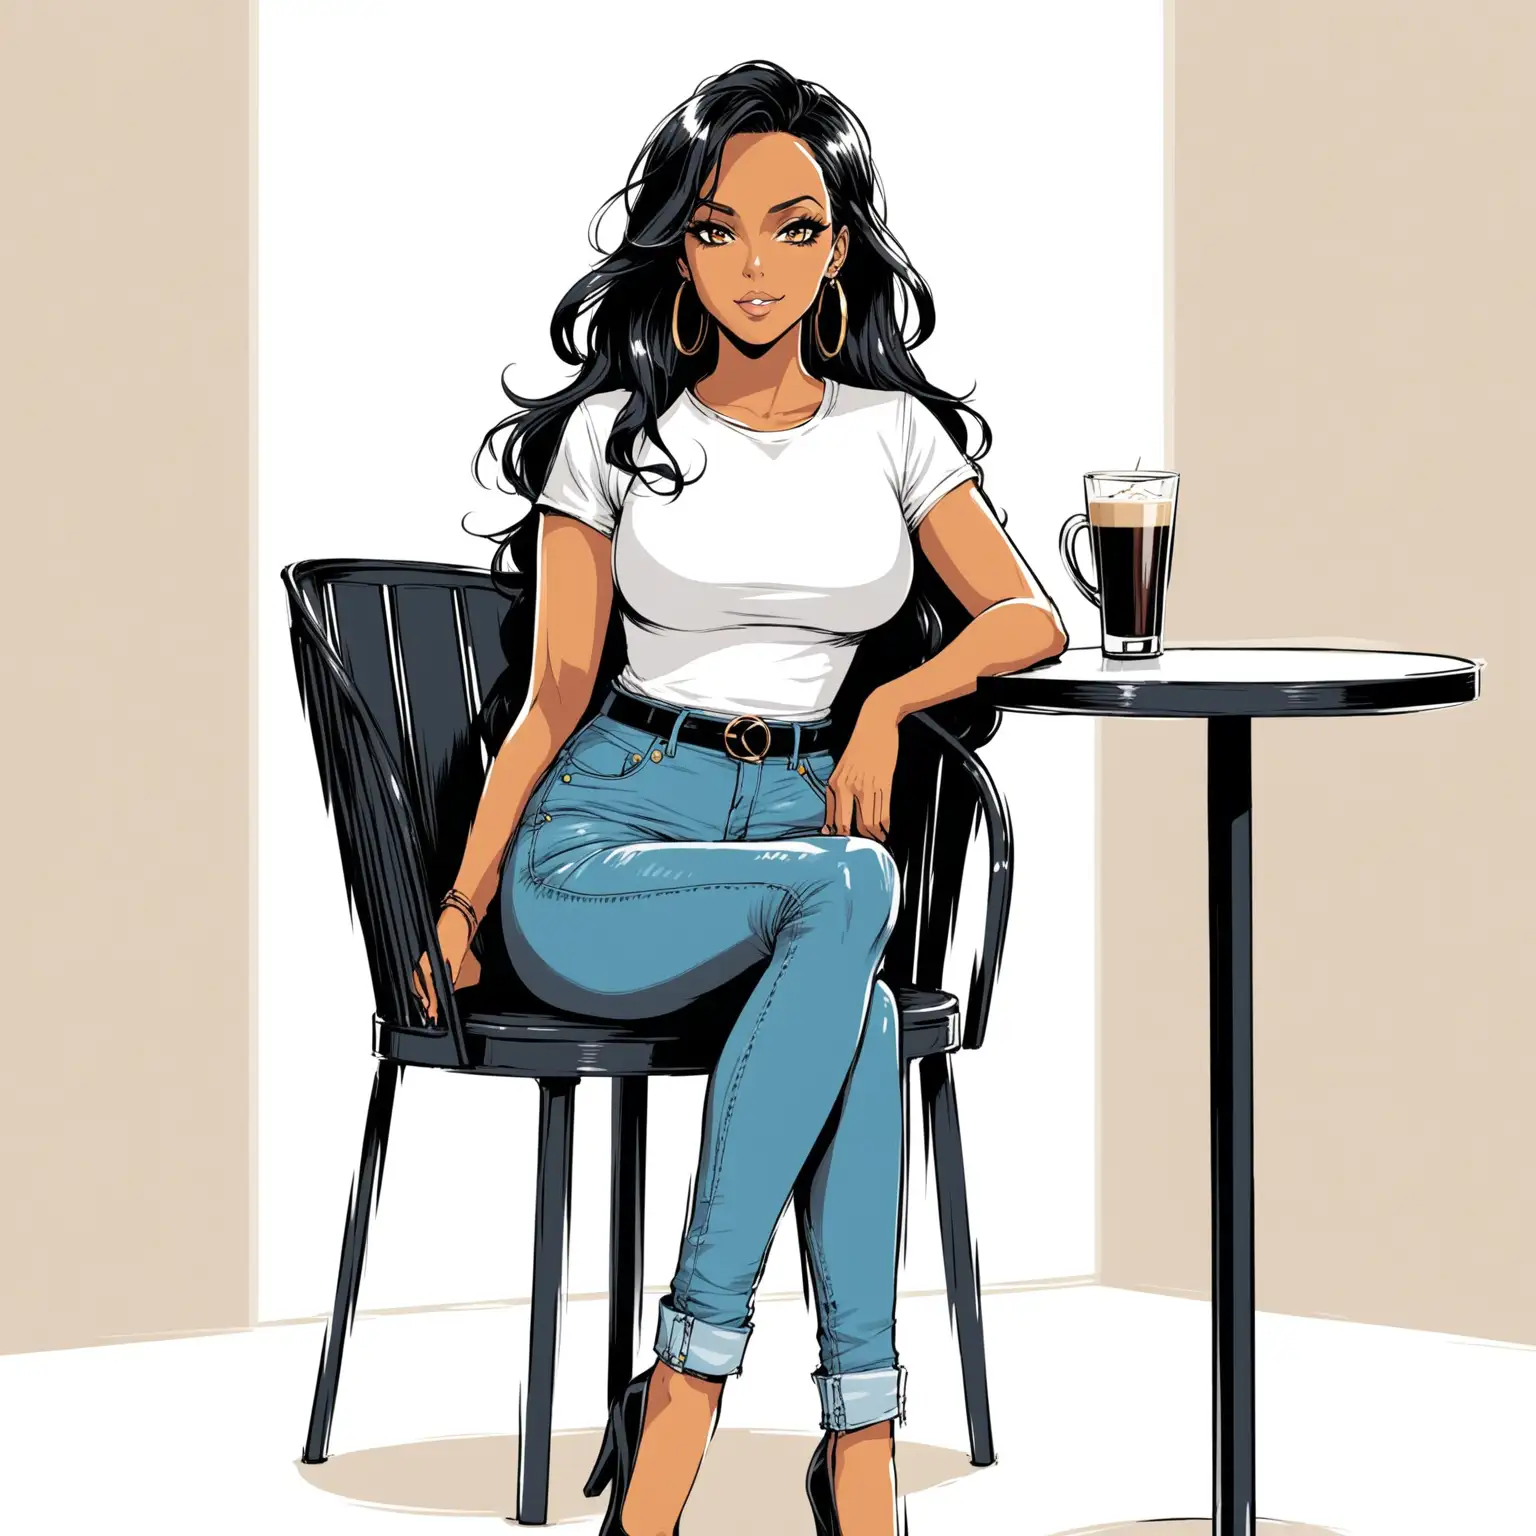 dans un style bande dessinée : 
une femme élégante au trait de la chanteusse Amel bent.
elle porte un jean.
elle porte un tee-shirt blanc moulant.
elle est assise sur une chaise de terrasse de café.
sur un fond blanc.